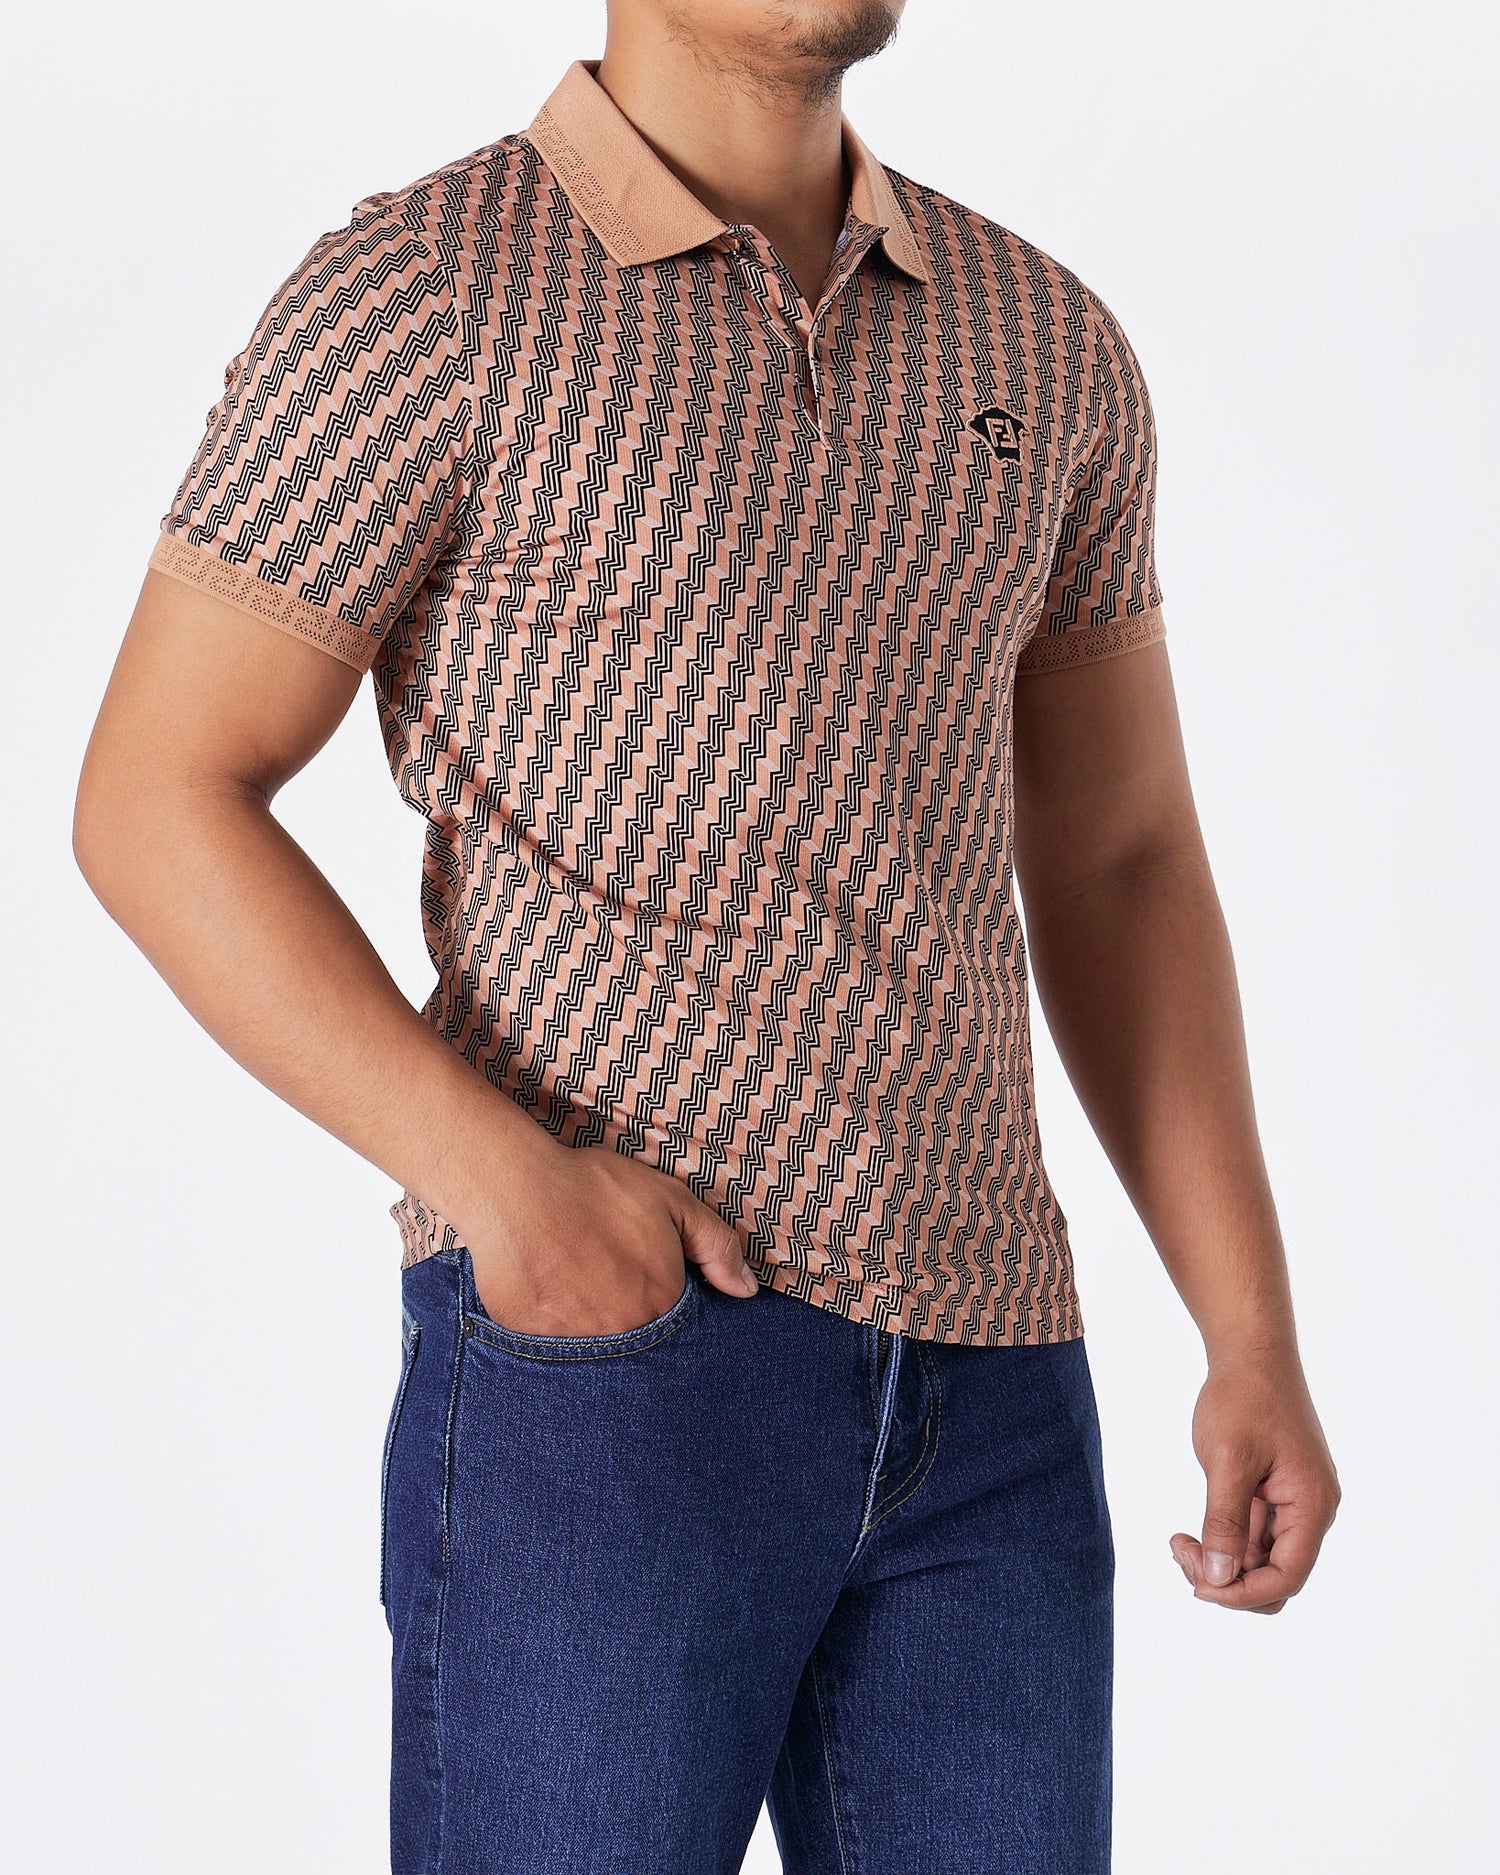 MOI OUTFIT-FEN Monogram Men Brown Polo Shirt 74.90